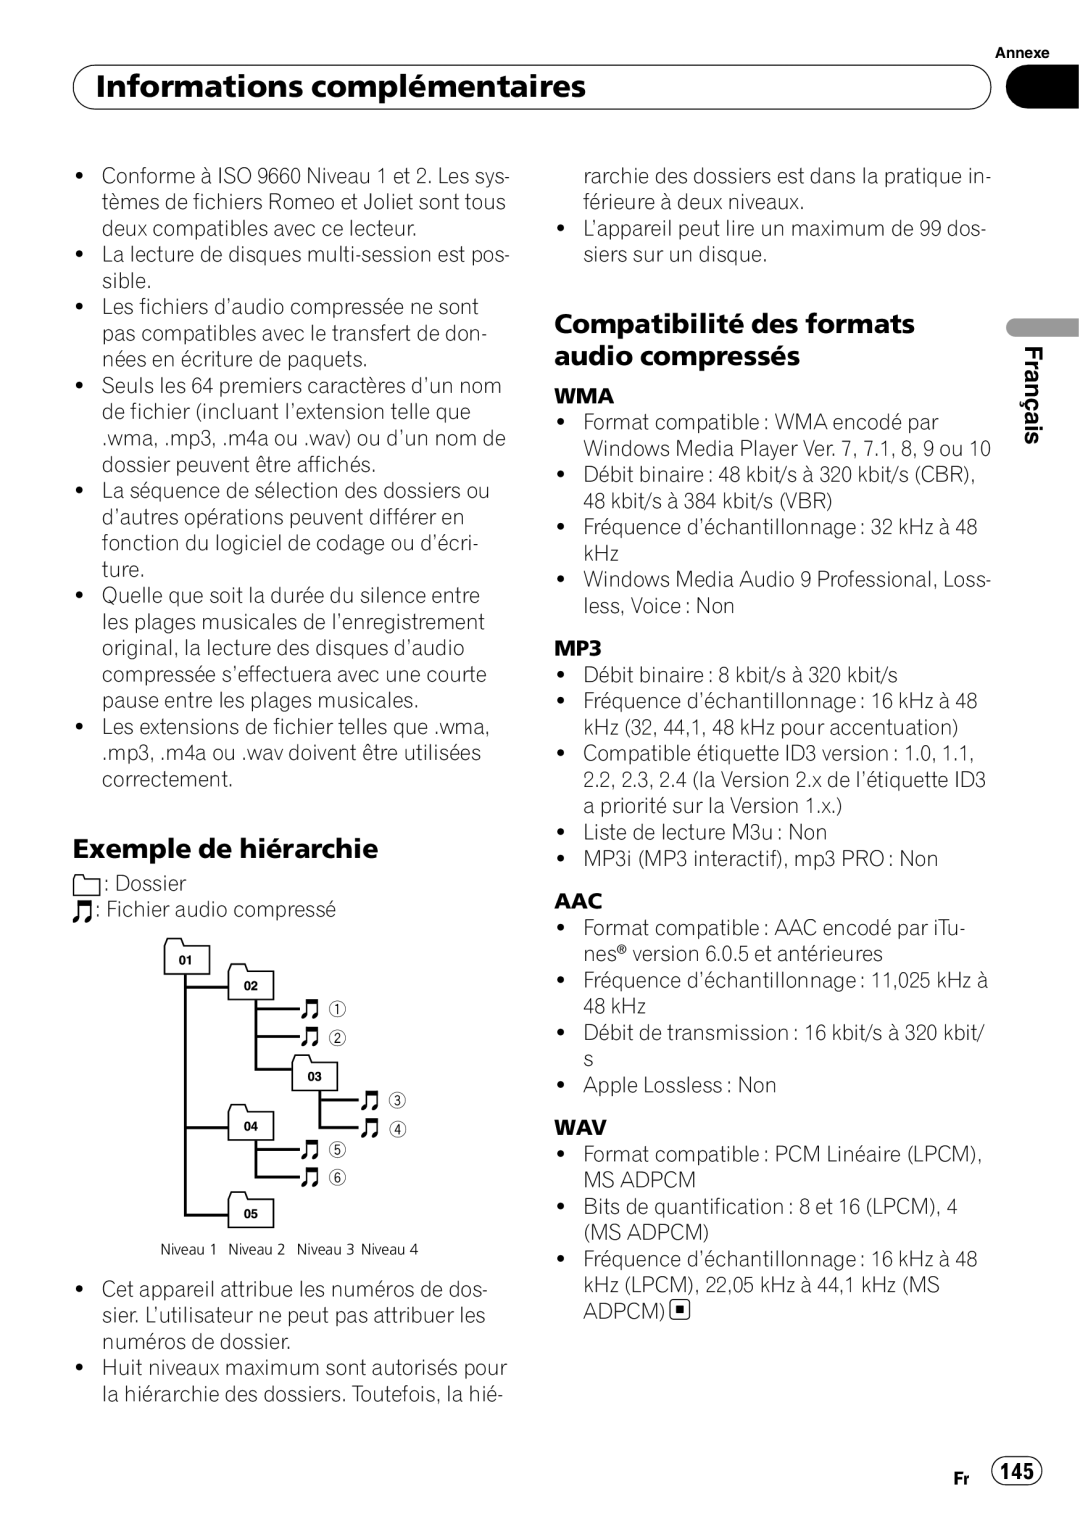 Pioneer DEH-P690UB Exemple de hiérarchie, Informations complémentaires, Compatibilité des formats audio compressés 